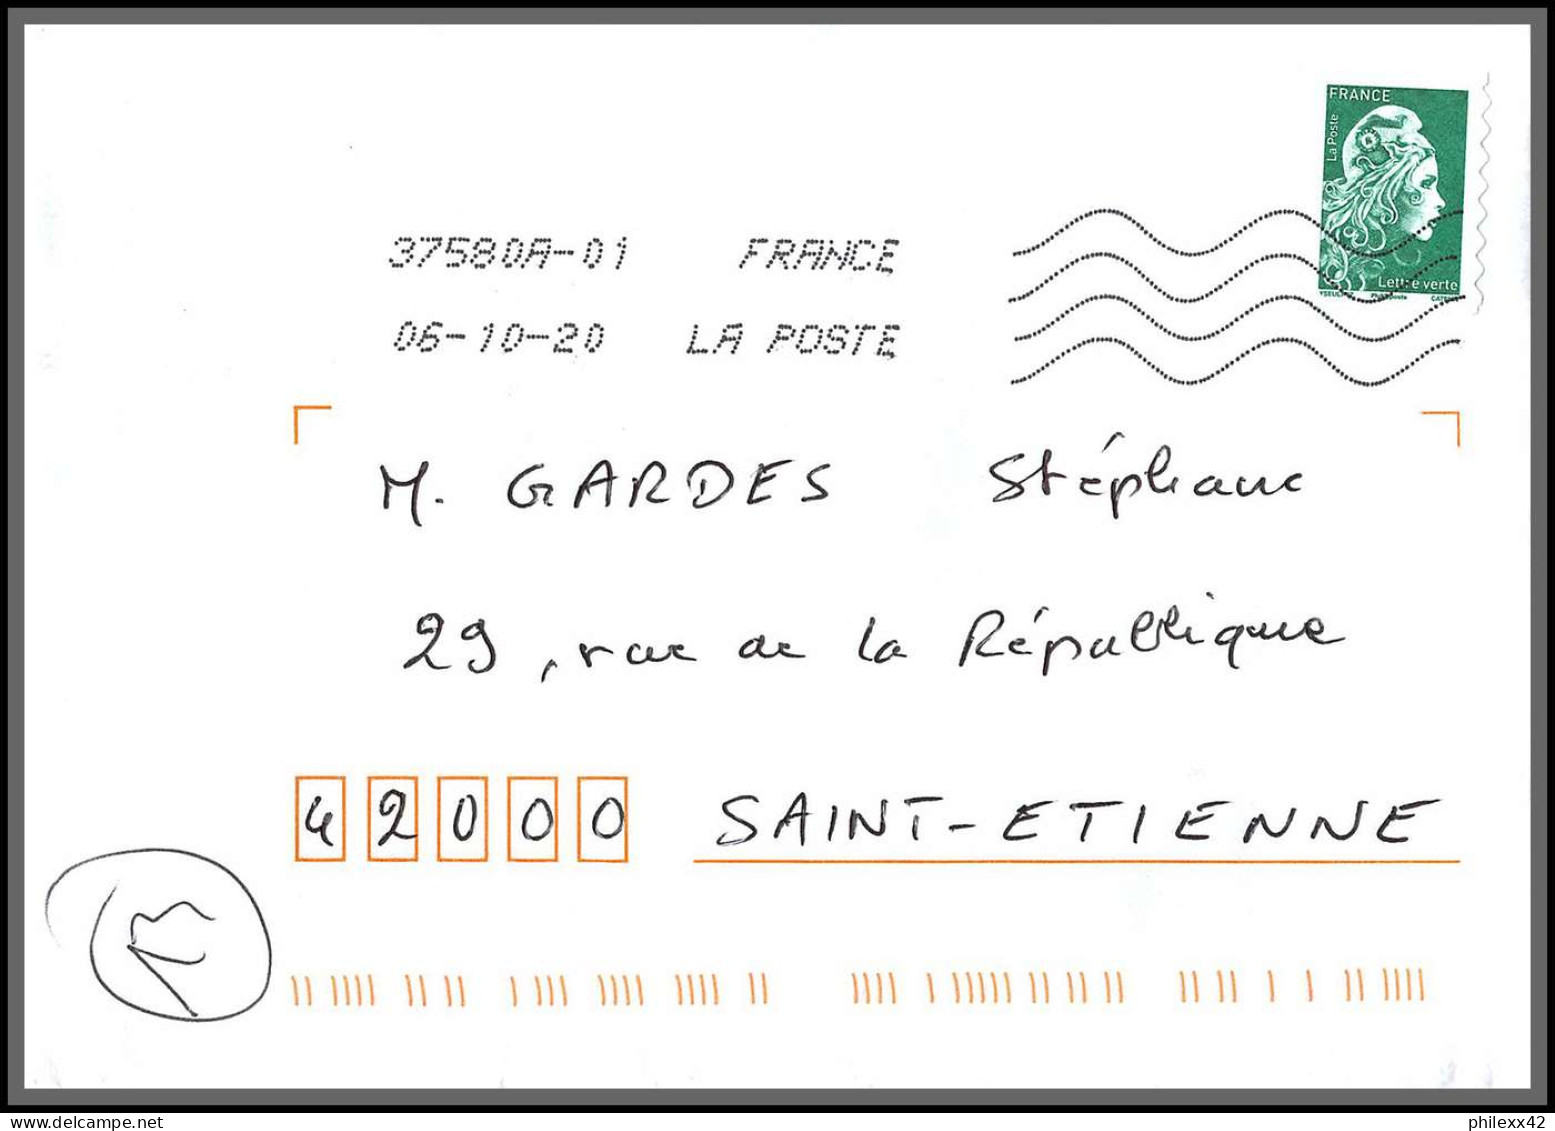 95887 - lot de 30 courriers lettres enveloppes de l'année 2020 divers affranchissements en EUROS